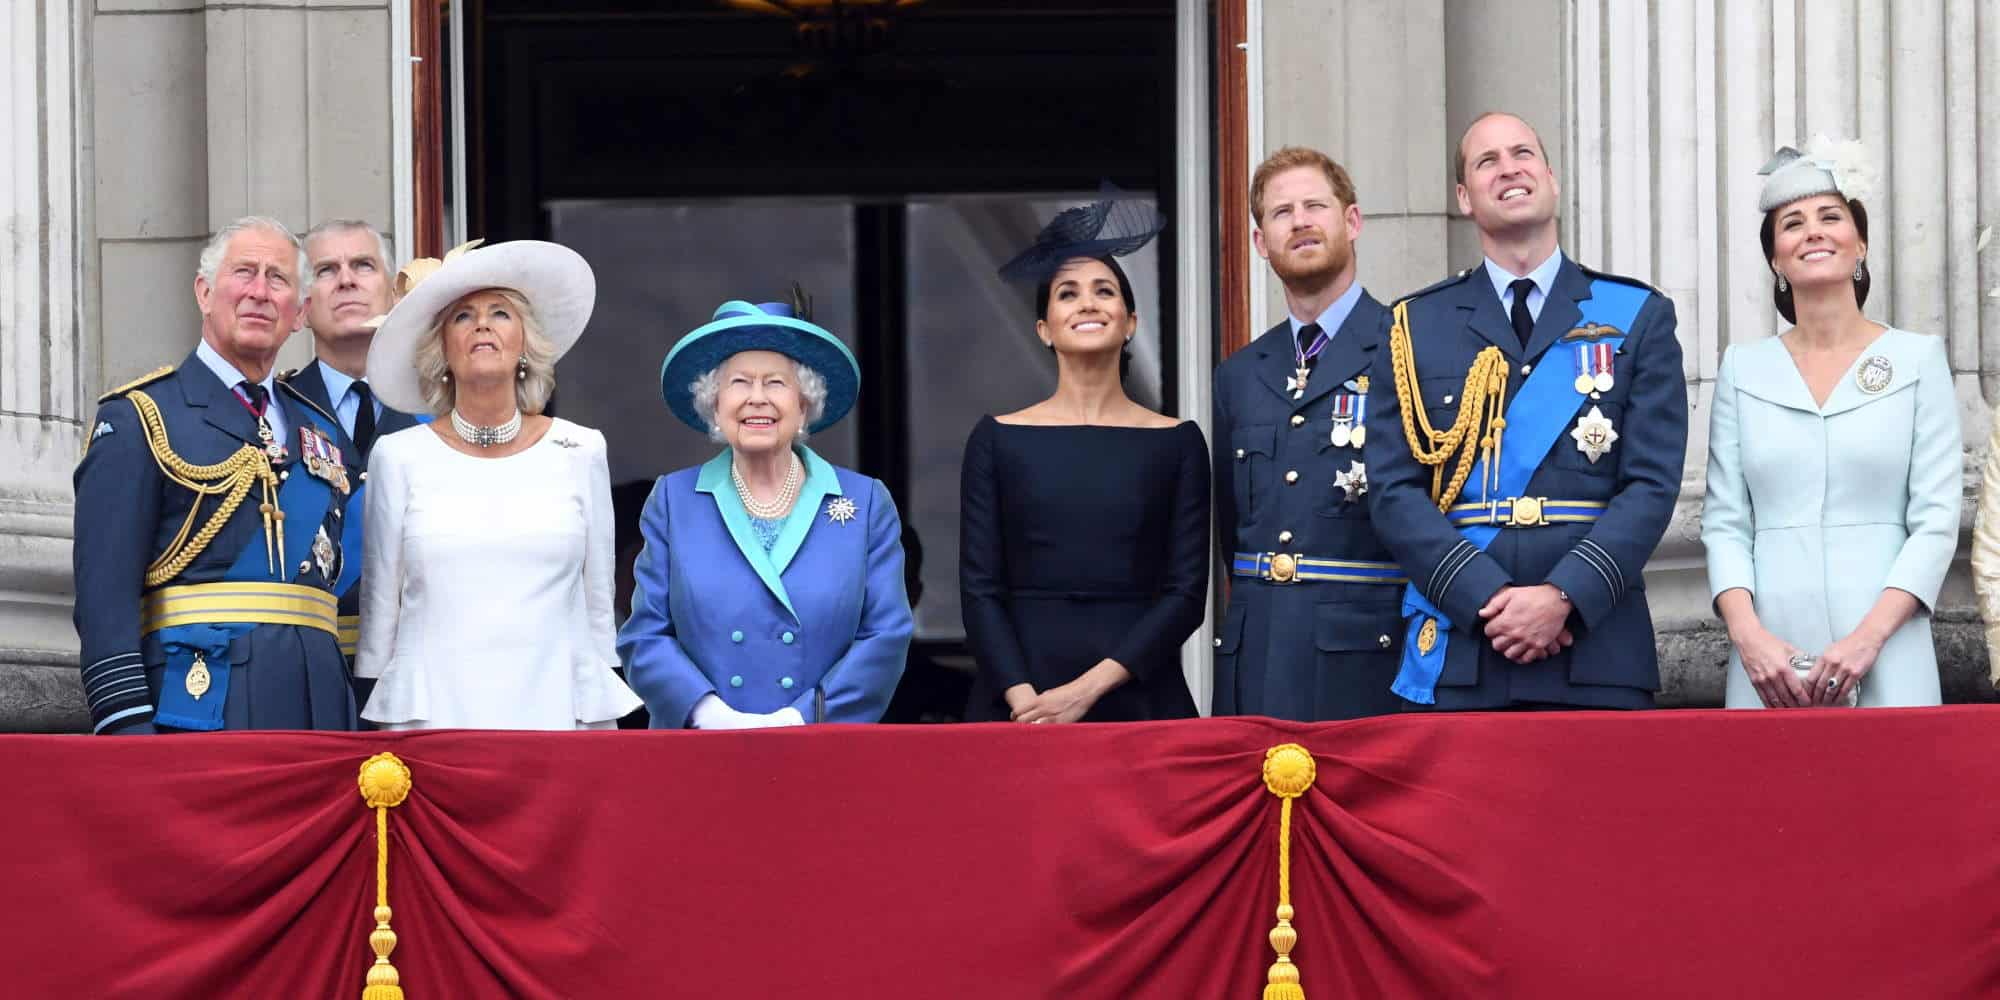 Η βασίλισσα Ελισάβετ και η βασιλική οικογένεια στο μπαλκόνι του Μπάκιγχαμ